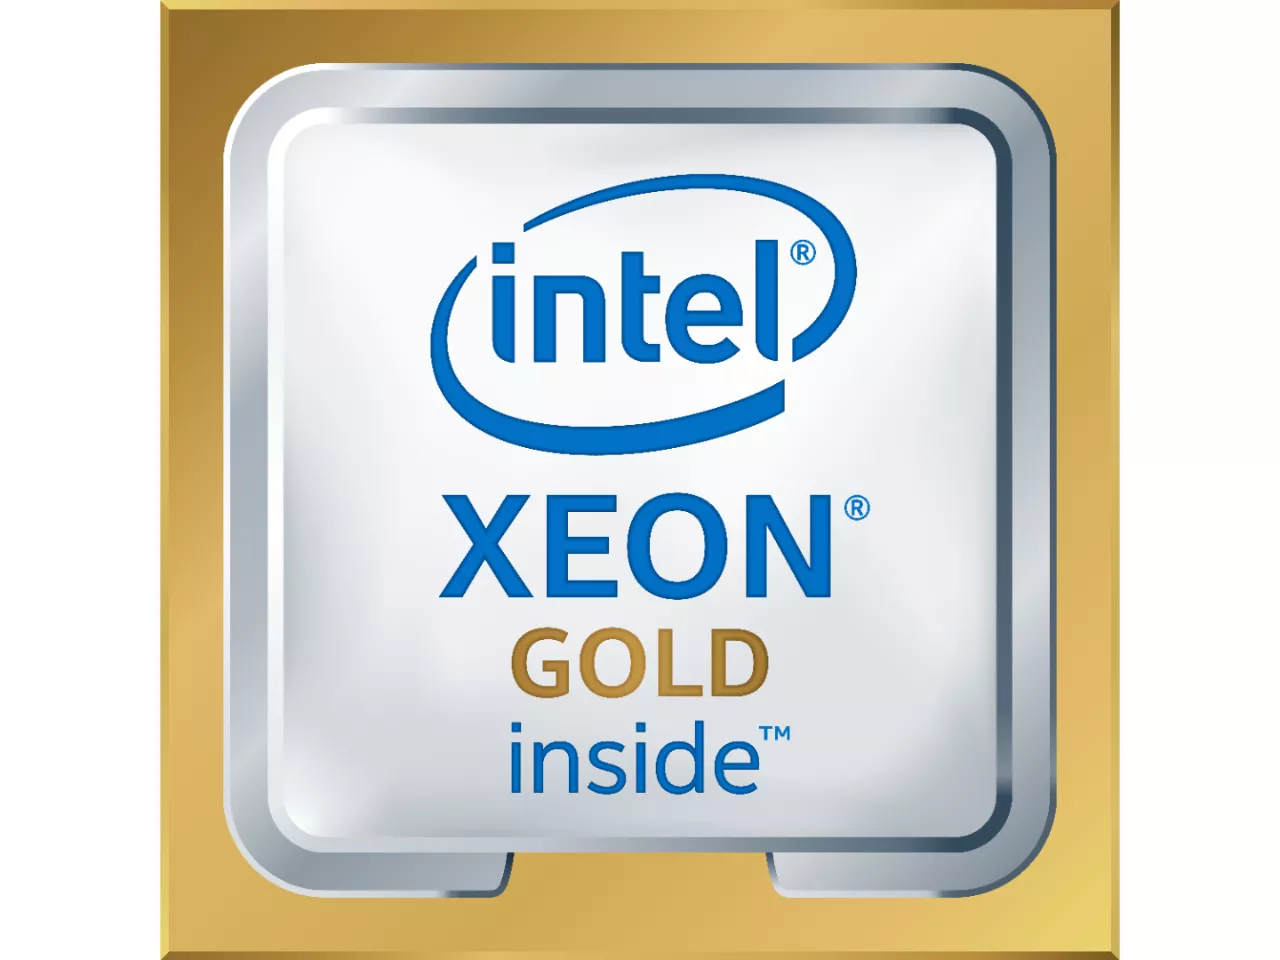 Achat Intel Xeon 6226 et autres produits de la marque Intel